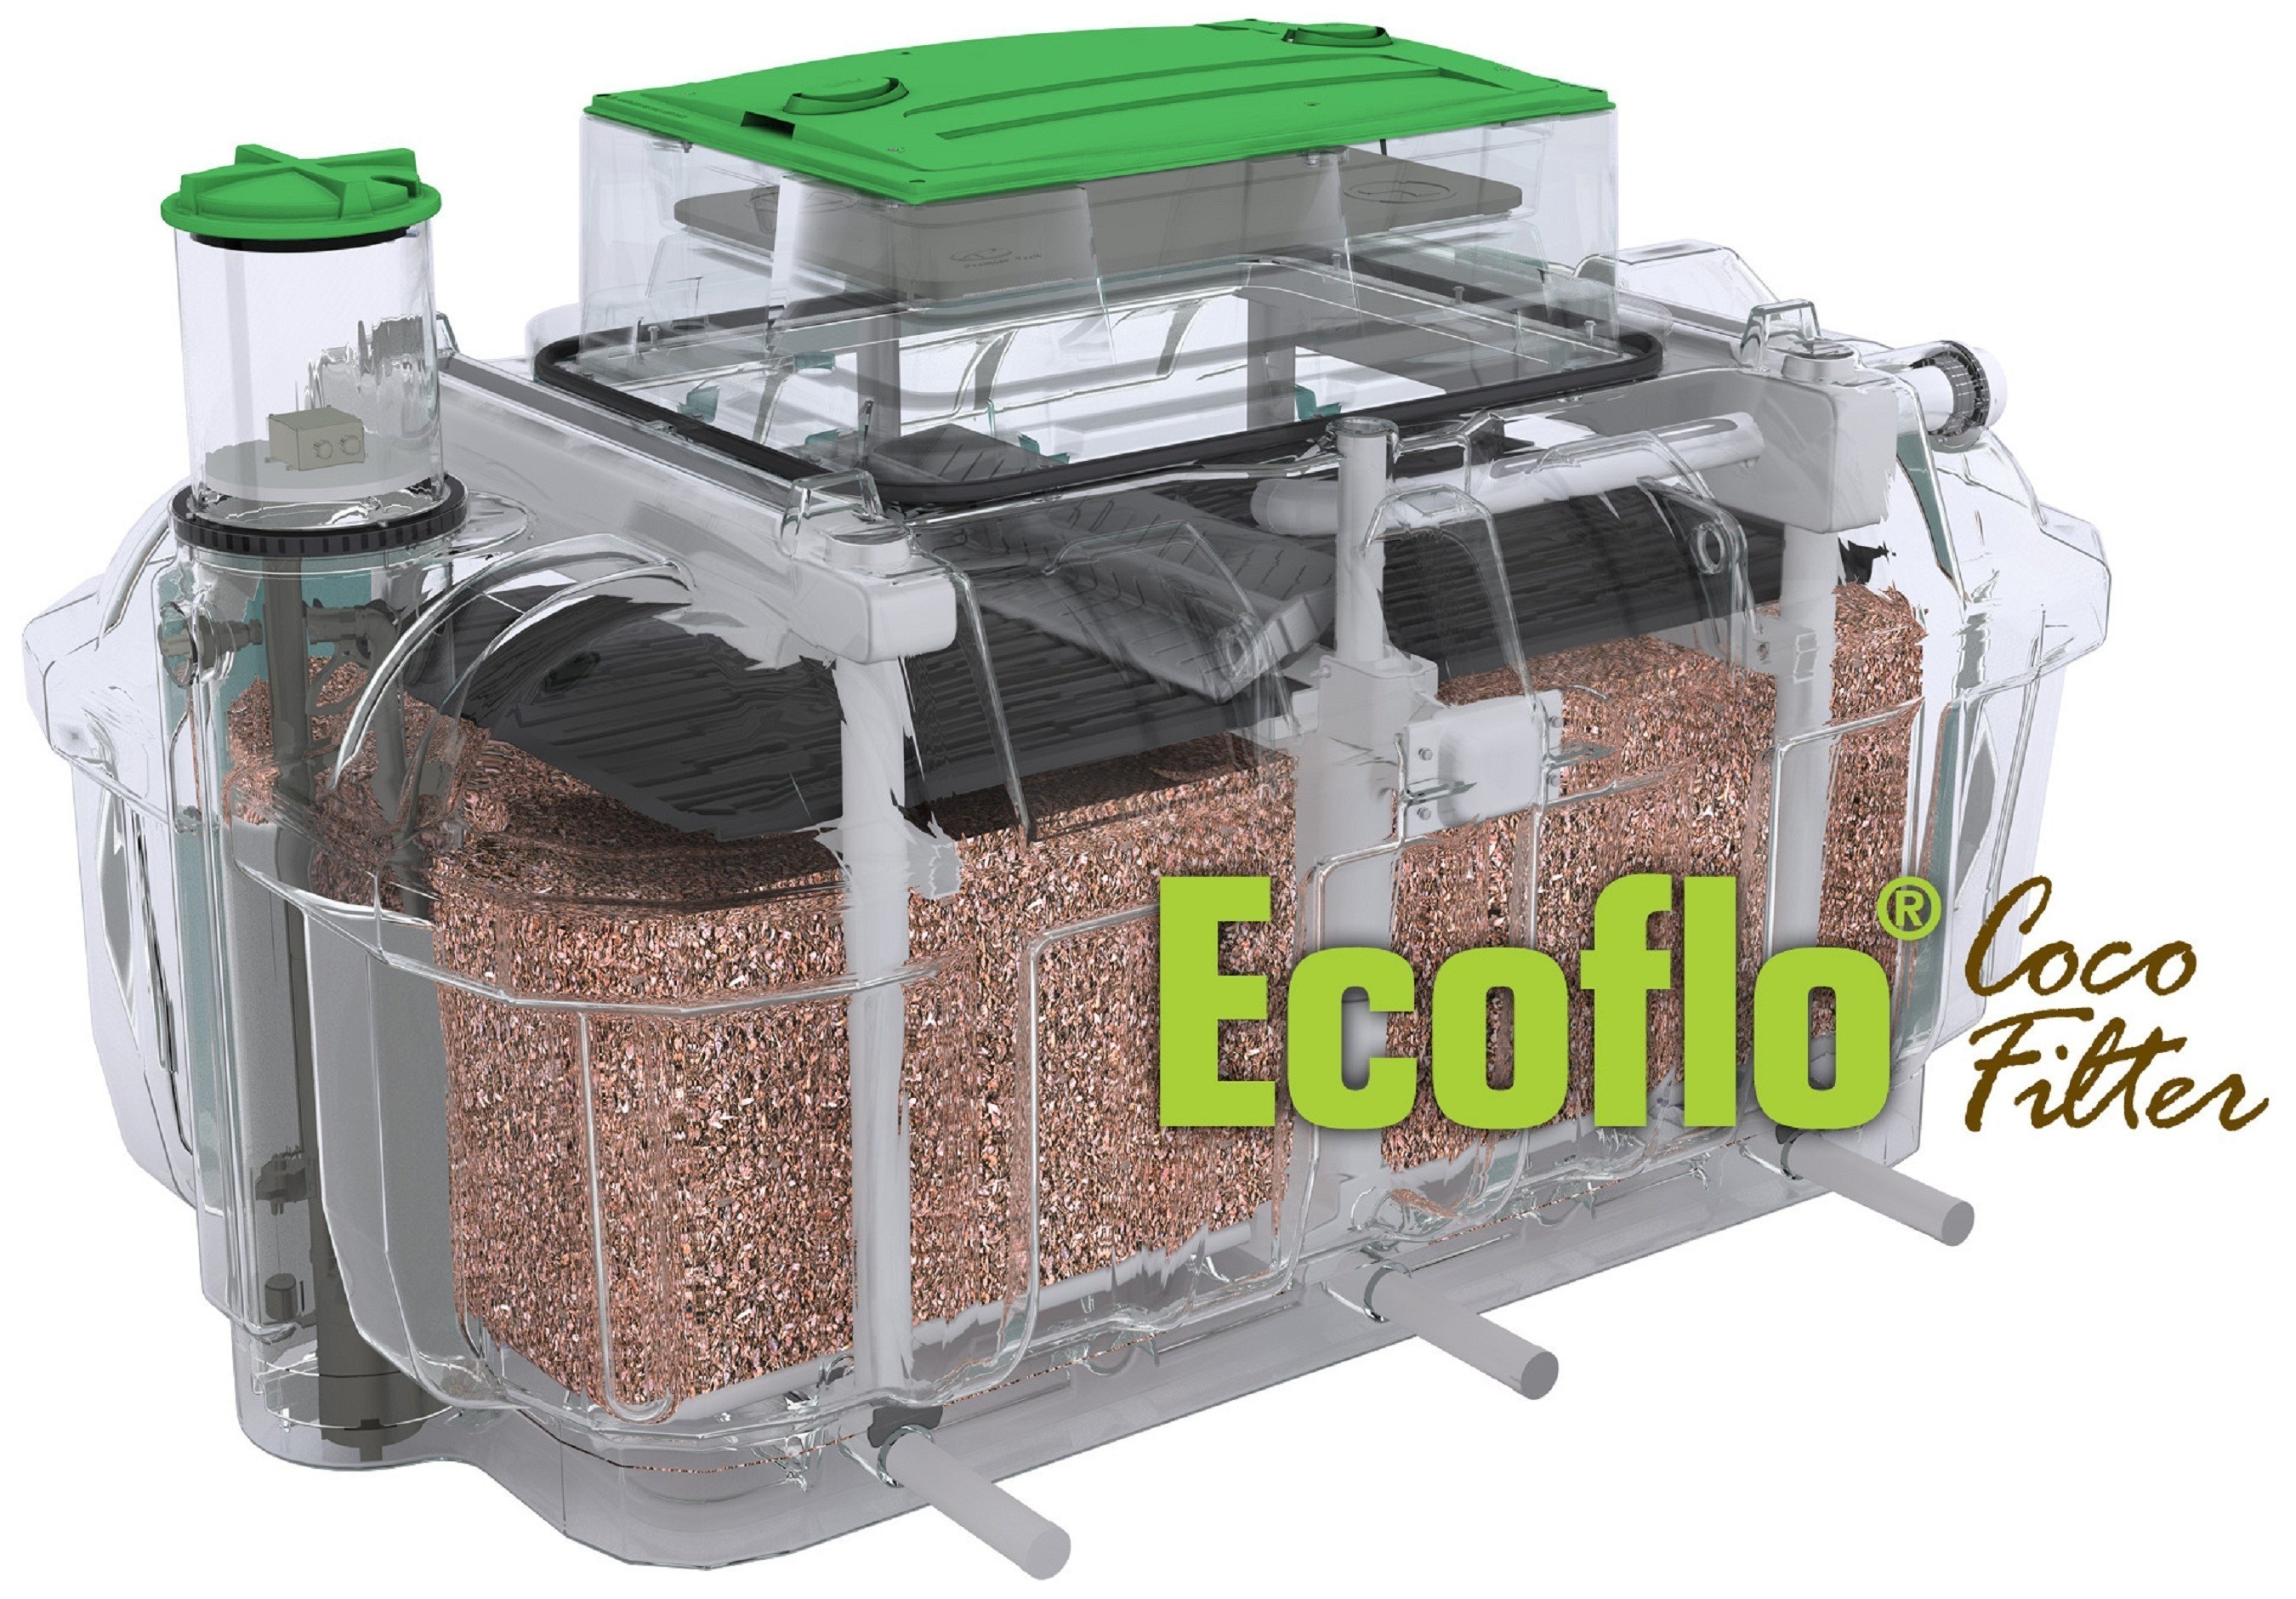 Ecoflo Coco Filter (PRNewsFoto/Premier Tech)